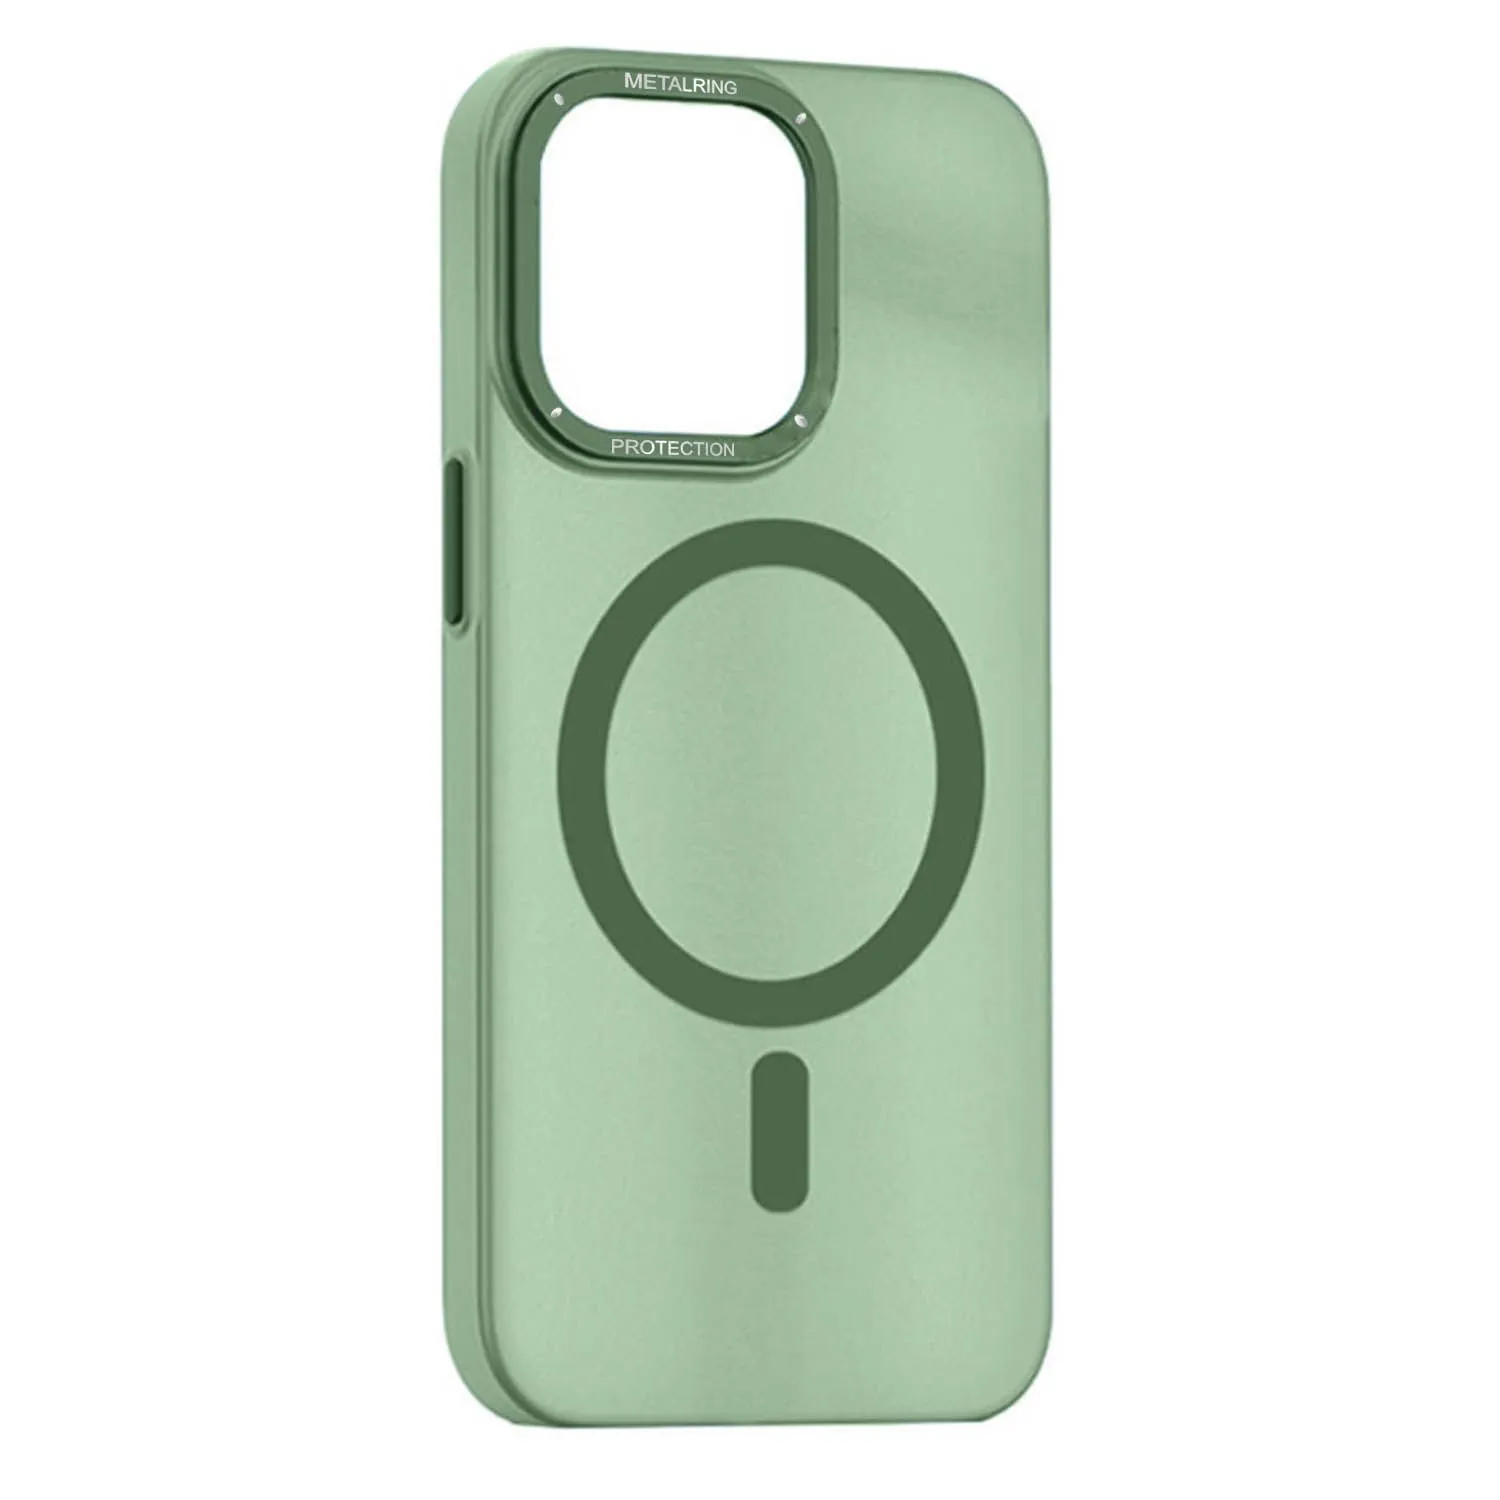 Матовый чехол Apple iPhone 12 Pro Max с металлической окантовкой с MagSafe (зеленый)